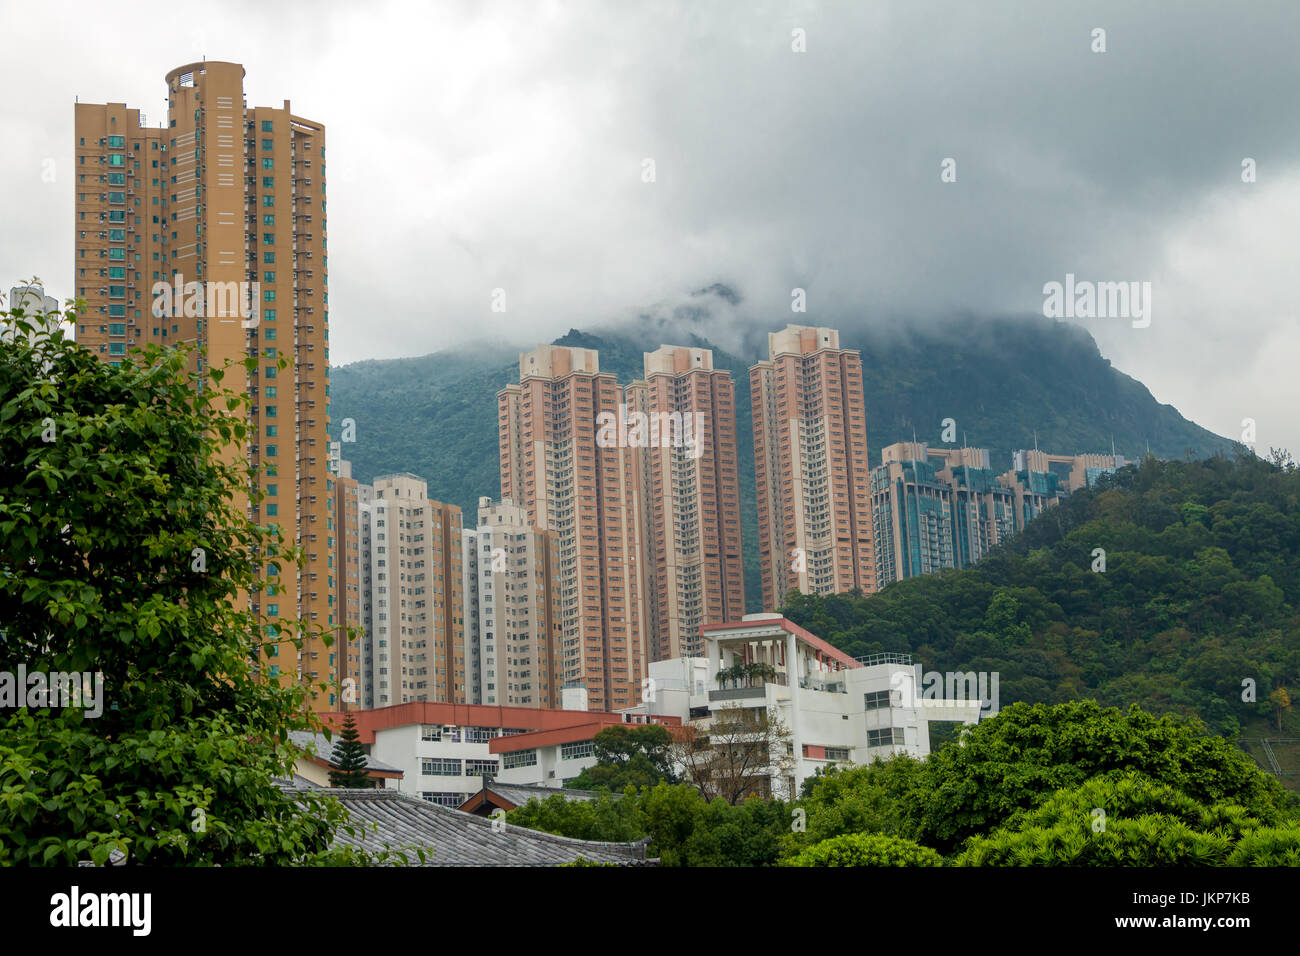 China. Un día nublado en Hong Kong. Rascacielos residencial contra el telón de fondo de montañas boscosas y nubes bajas Foto de stock